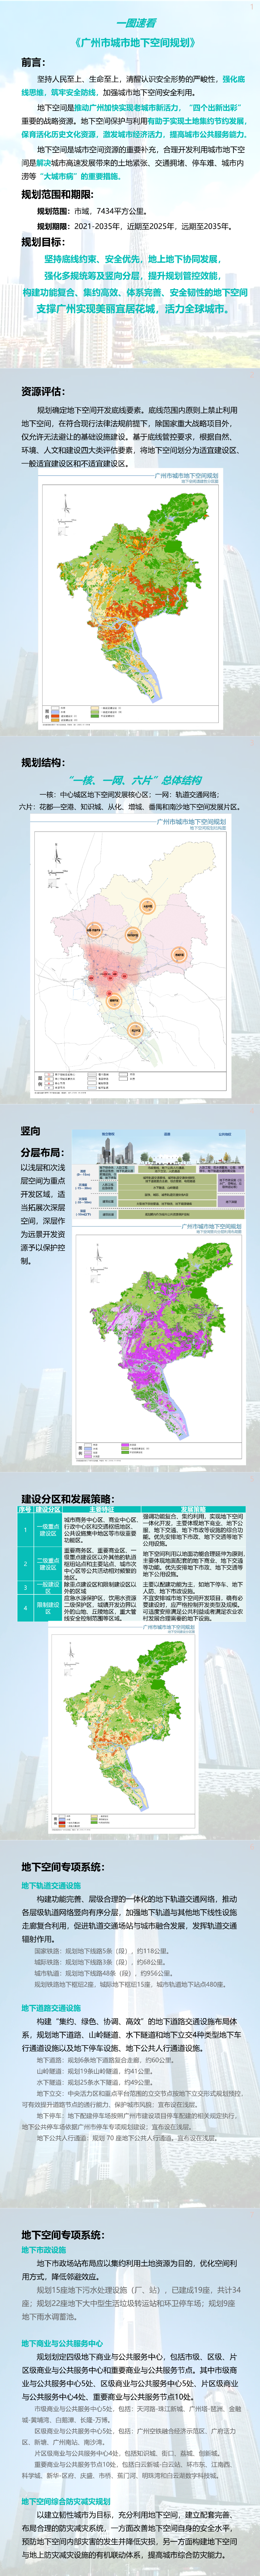 政策解读：一图速看《广州市城市地下空间规划》.png